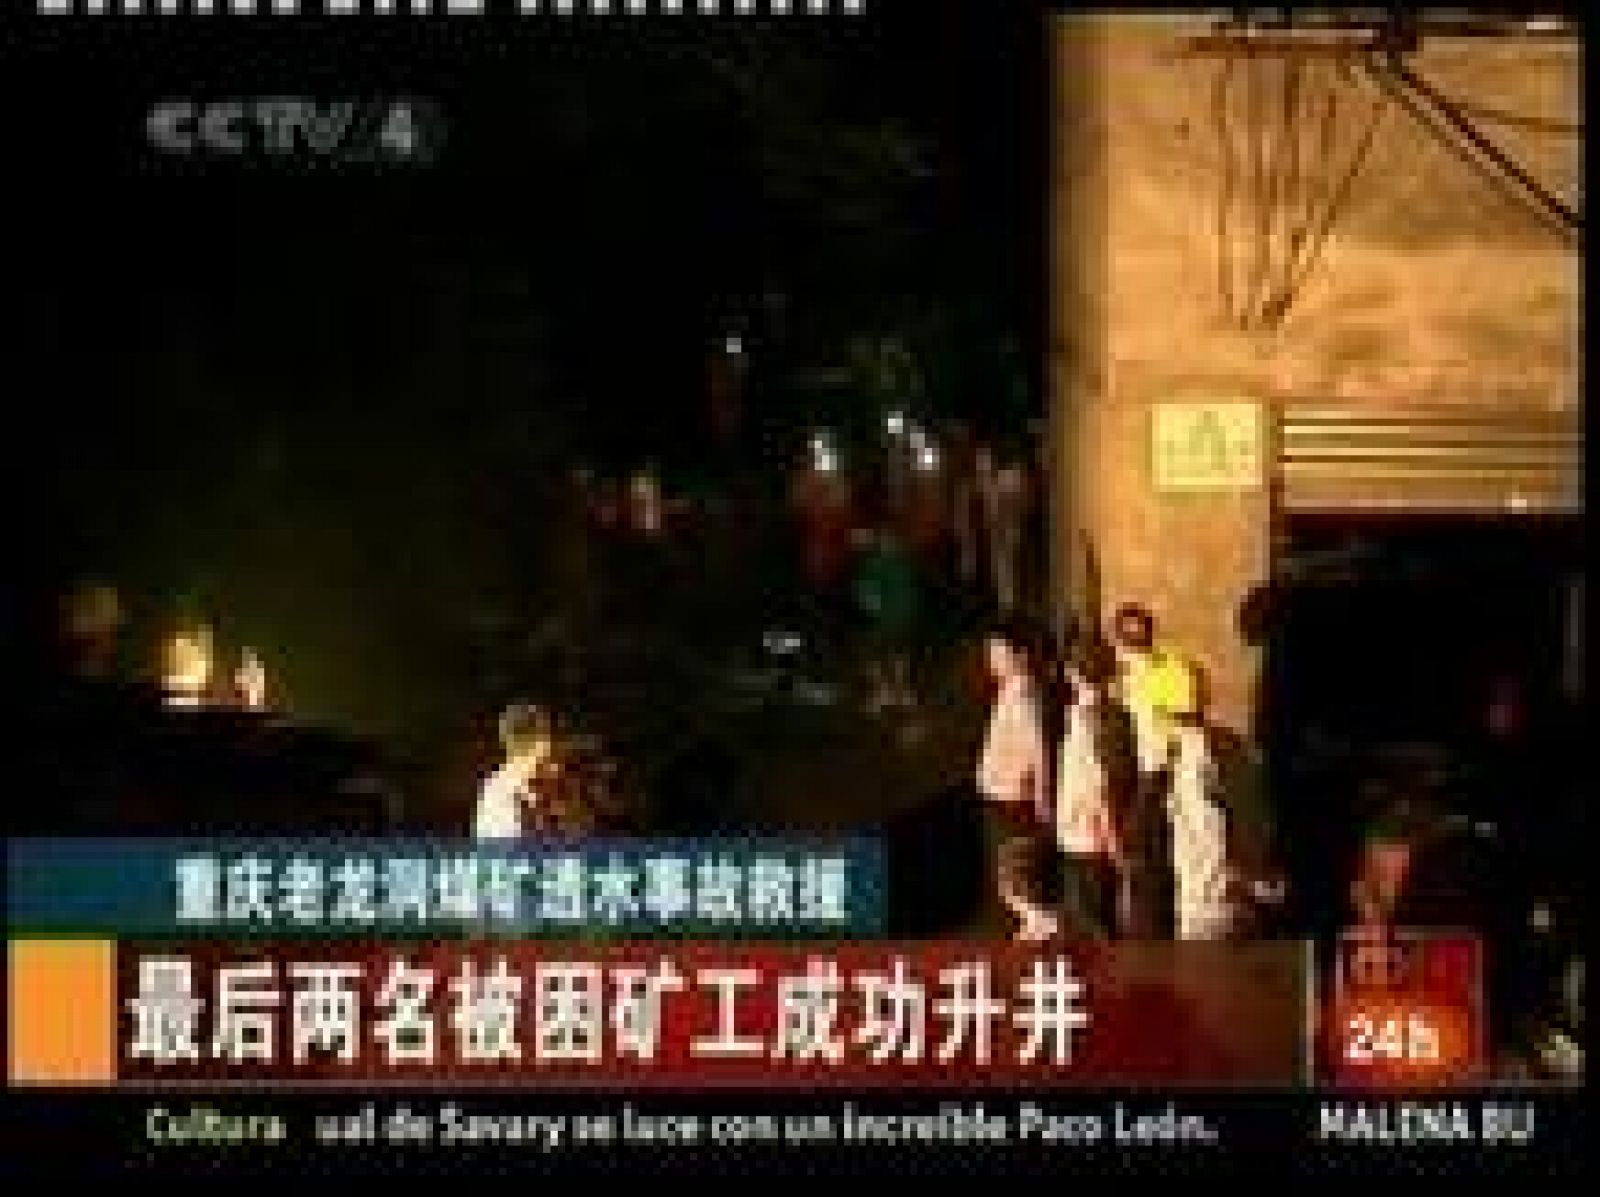   7 mineros chinos salen vivos después de quedarse 80 horas atrapados